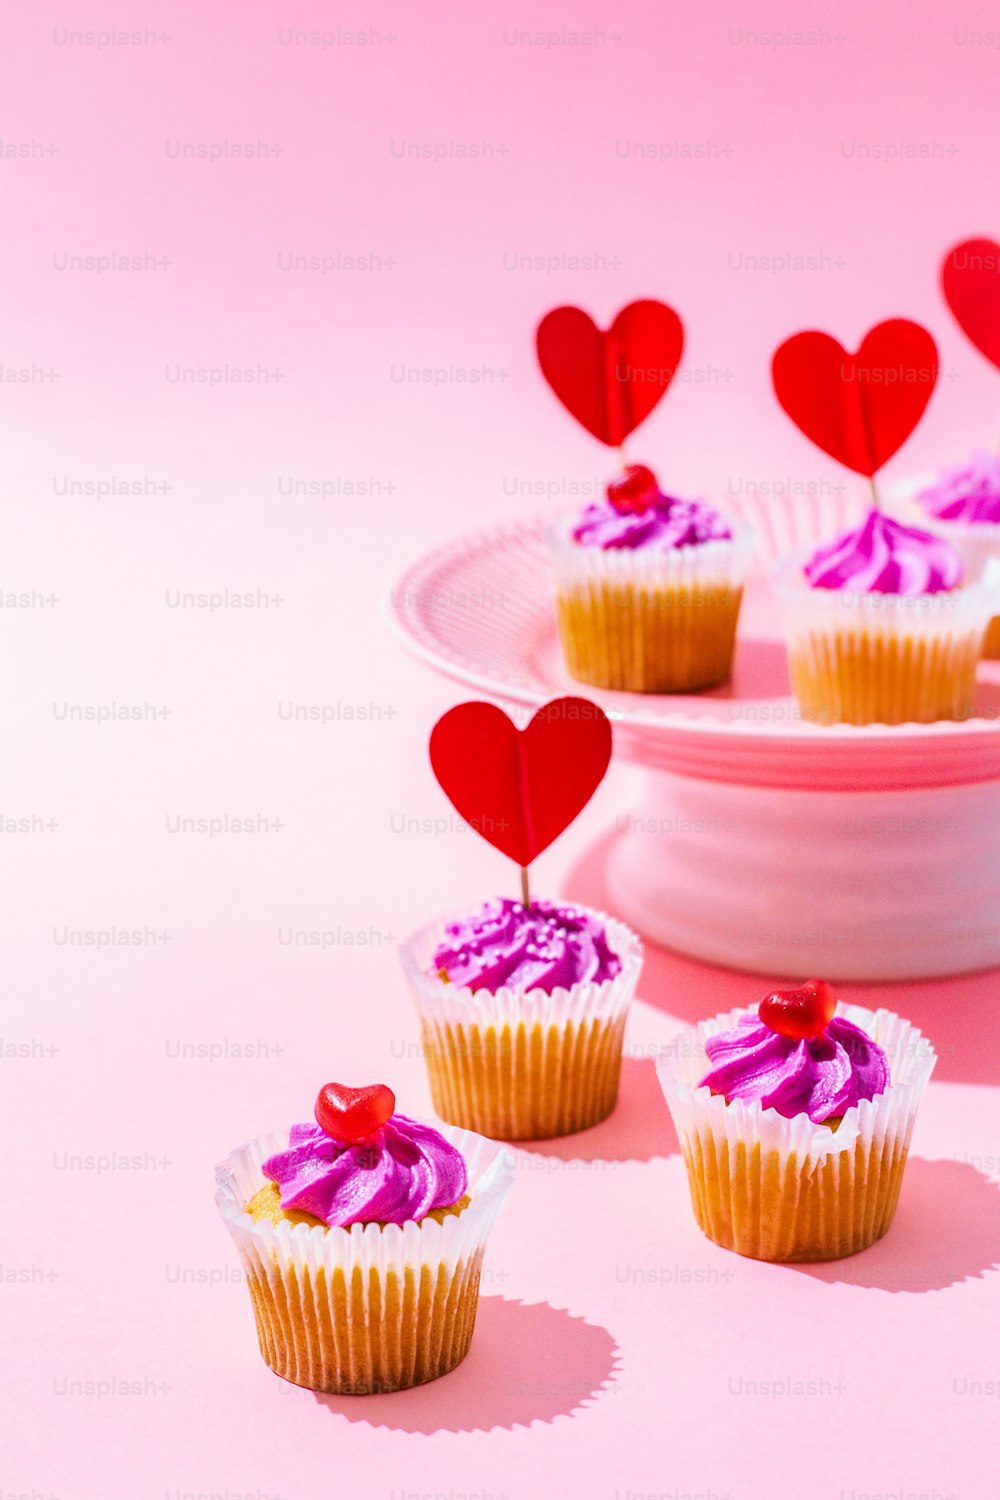 접시에 분홍색 설탕 프로스팅과 하트를 곁들인 컵케이크